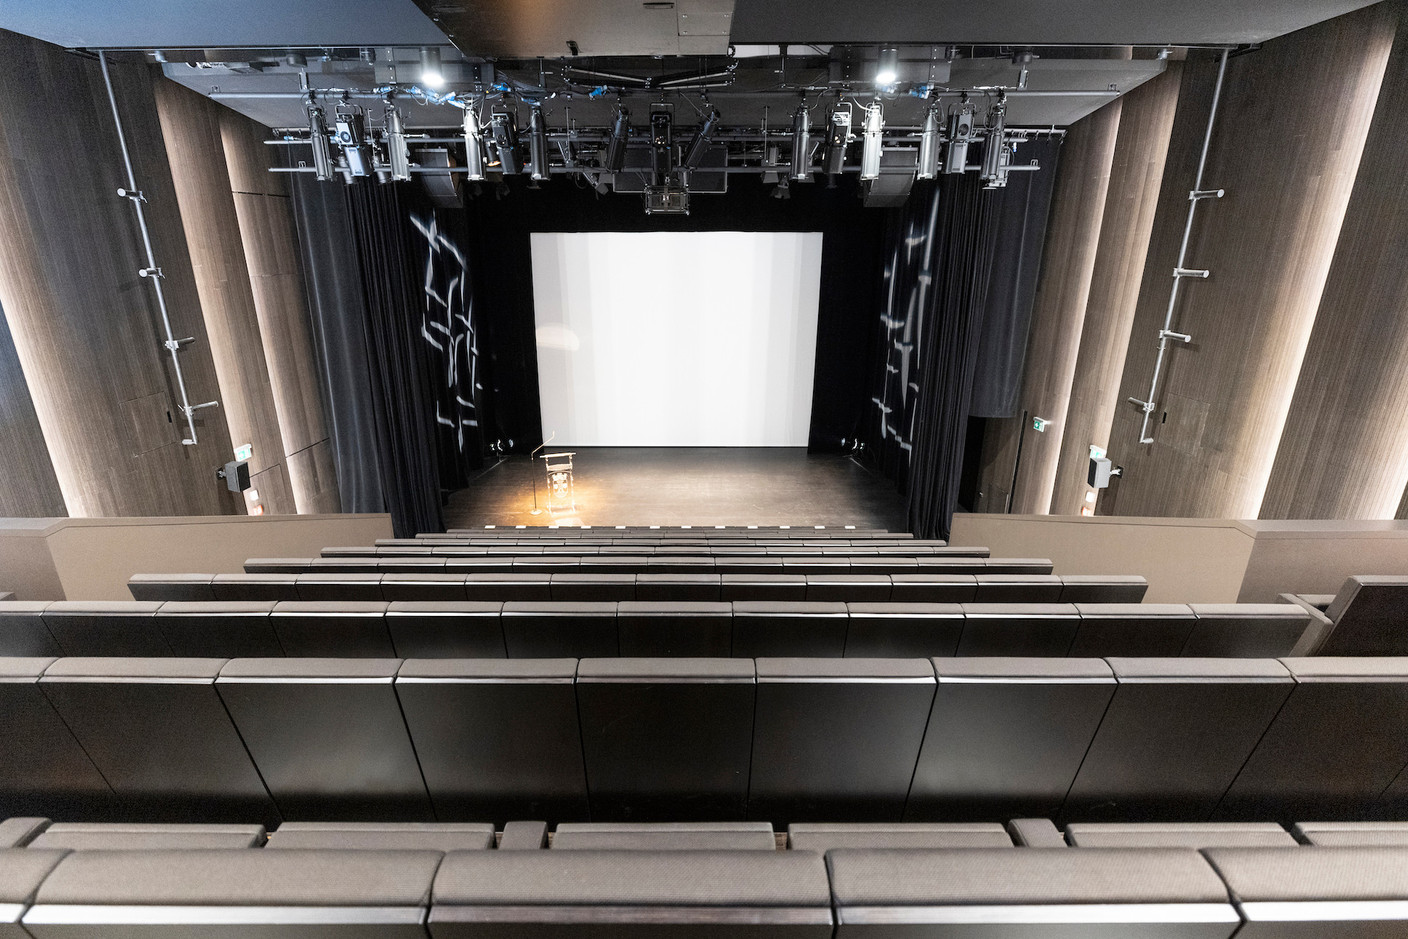 La salle de cinéma a été transformée pour être aussi salle de spectacles. (Photo: Guy Wolff/Maison Moderne)